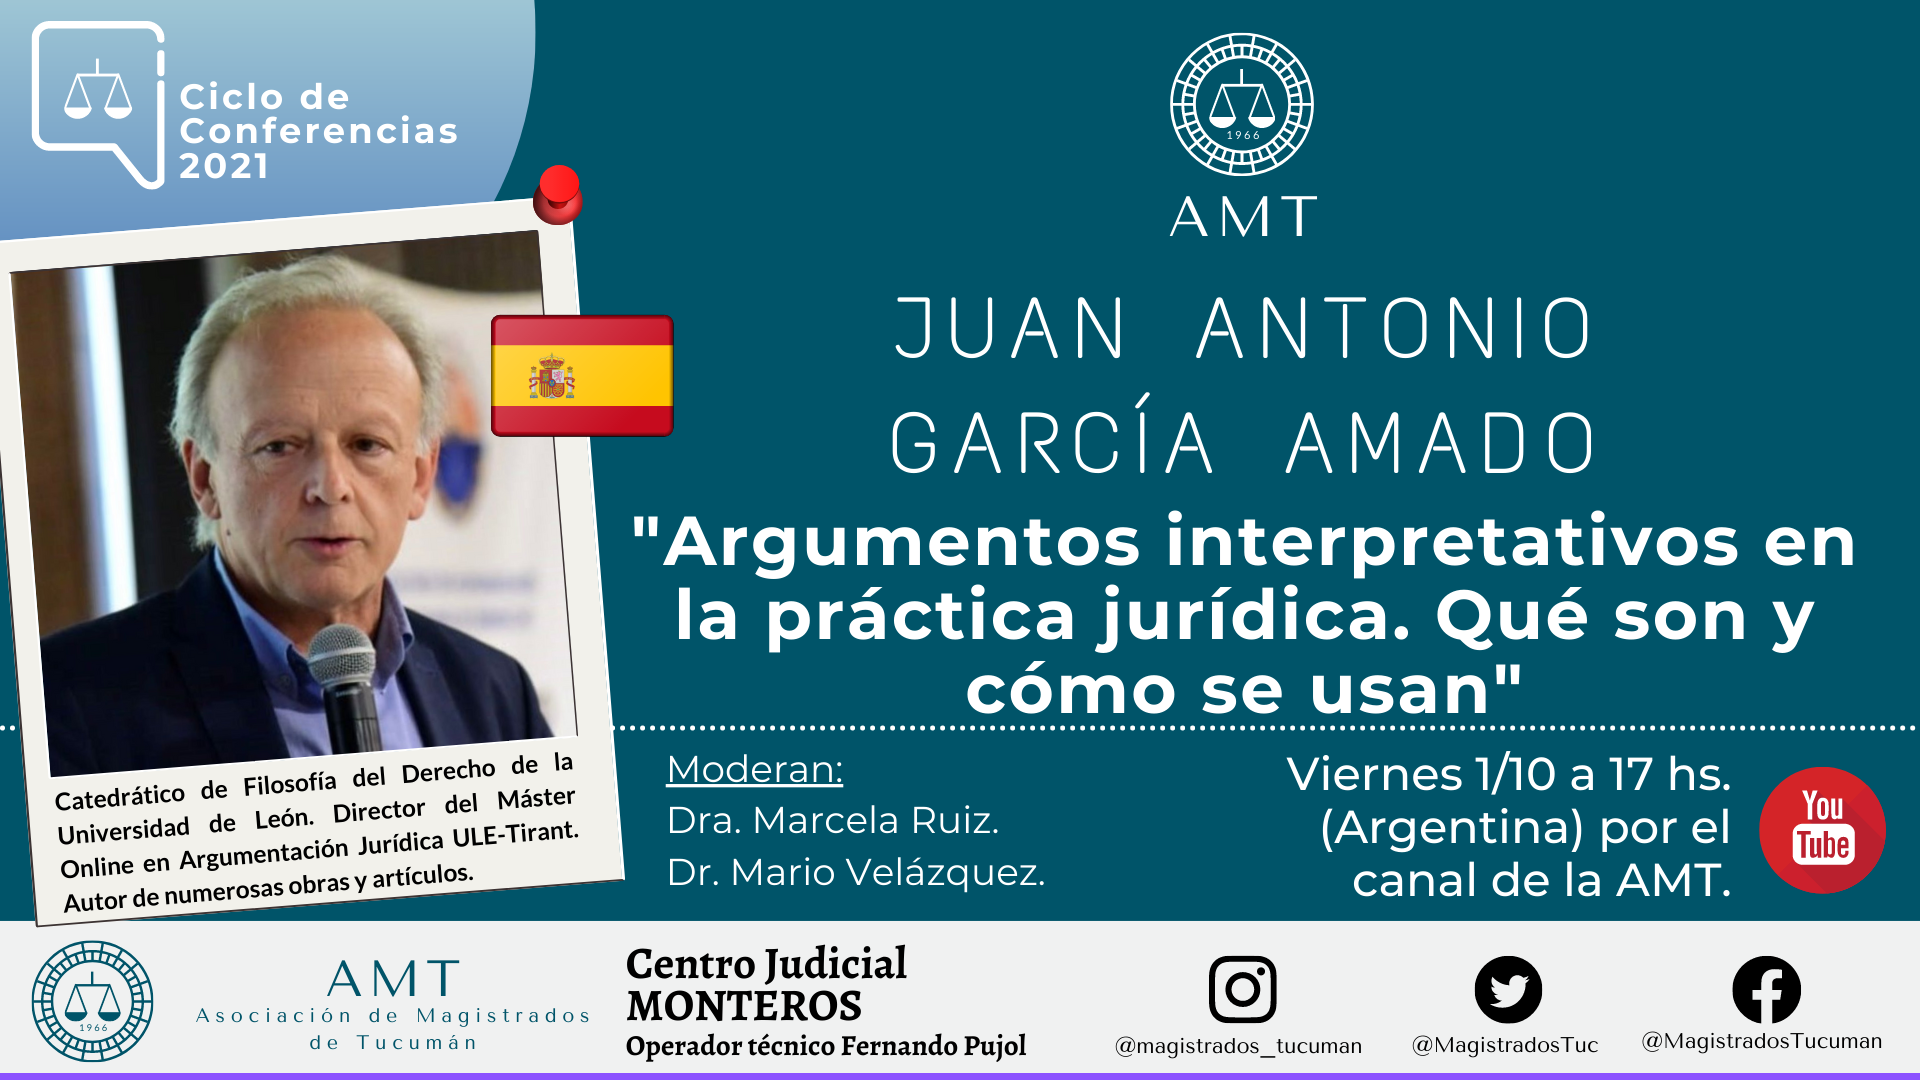 Vuelva a ver la conferencia de Juan Antonio García Amado «Argumentos interpretativos en la práctica jurídica»